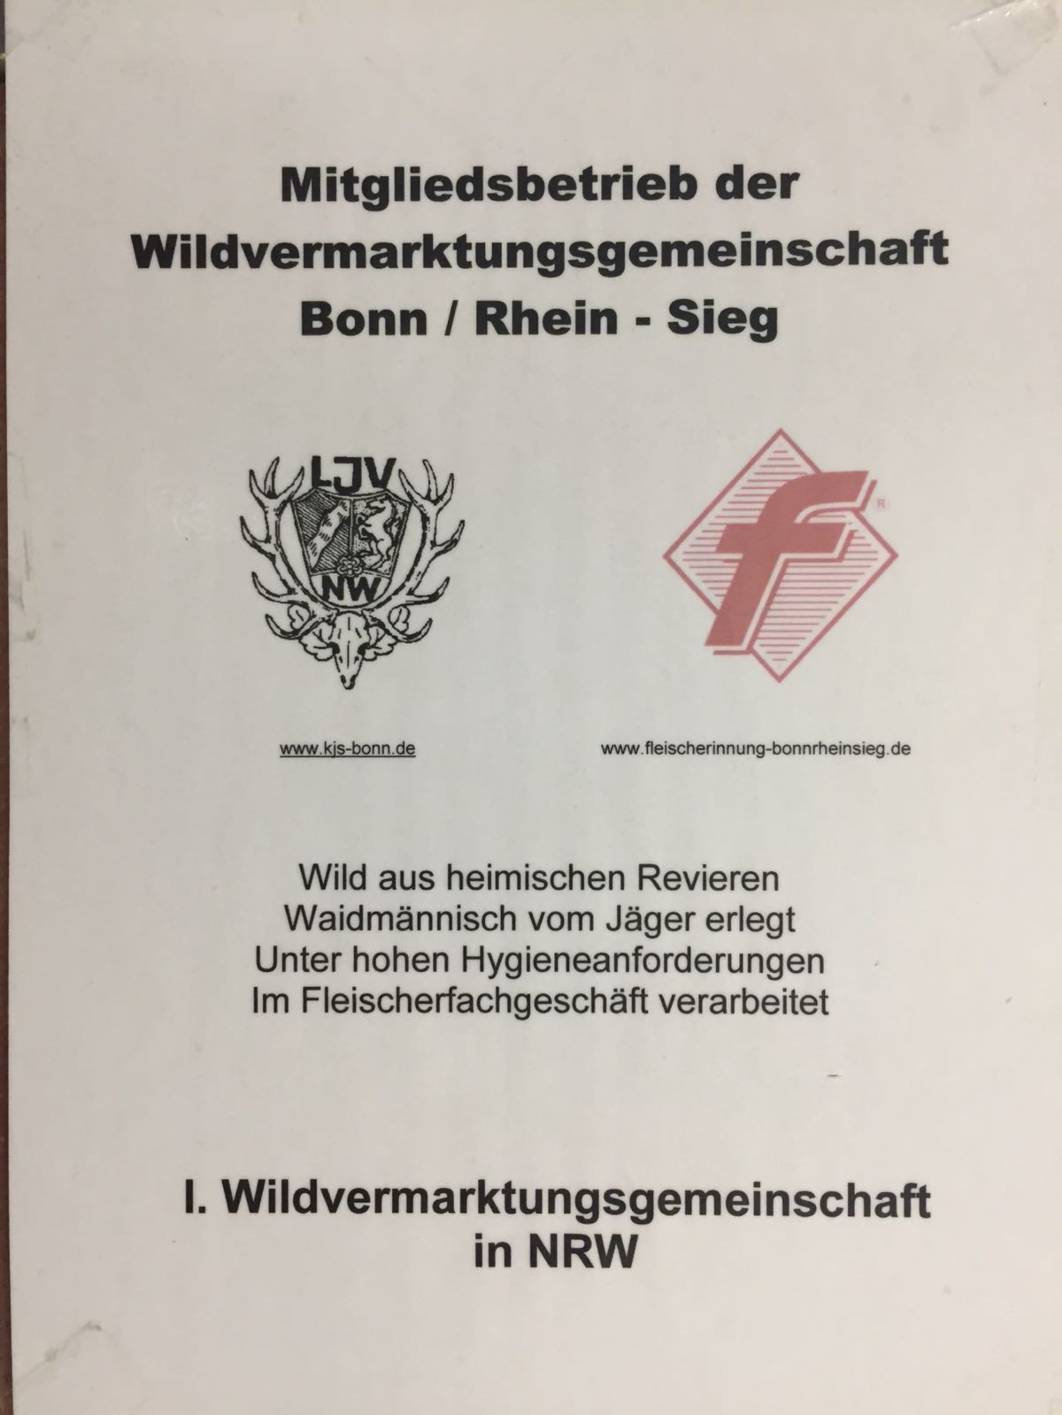 Wildvermarktungsgemeinschaft Bonn / Rhein-Sieg